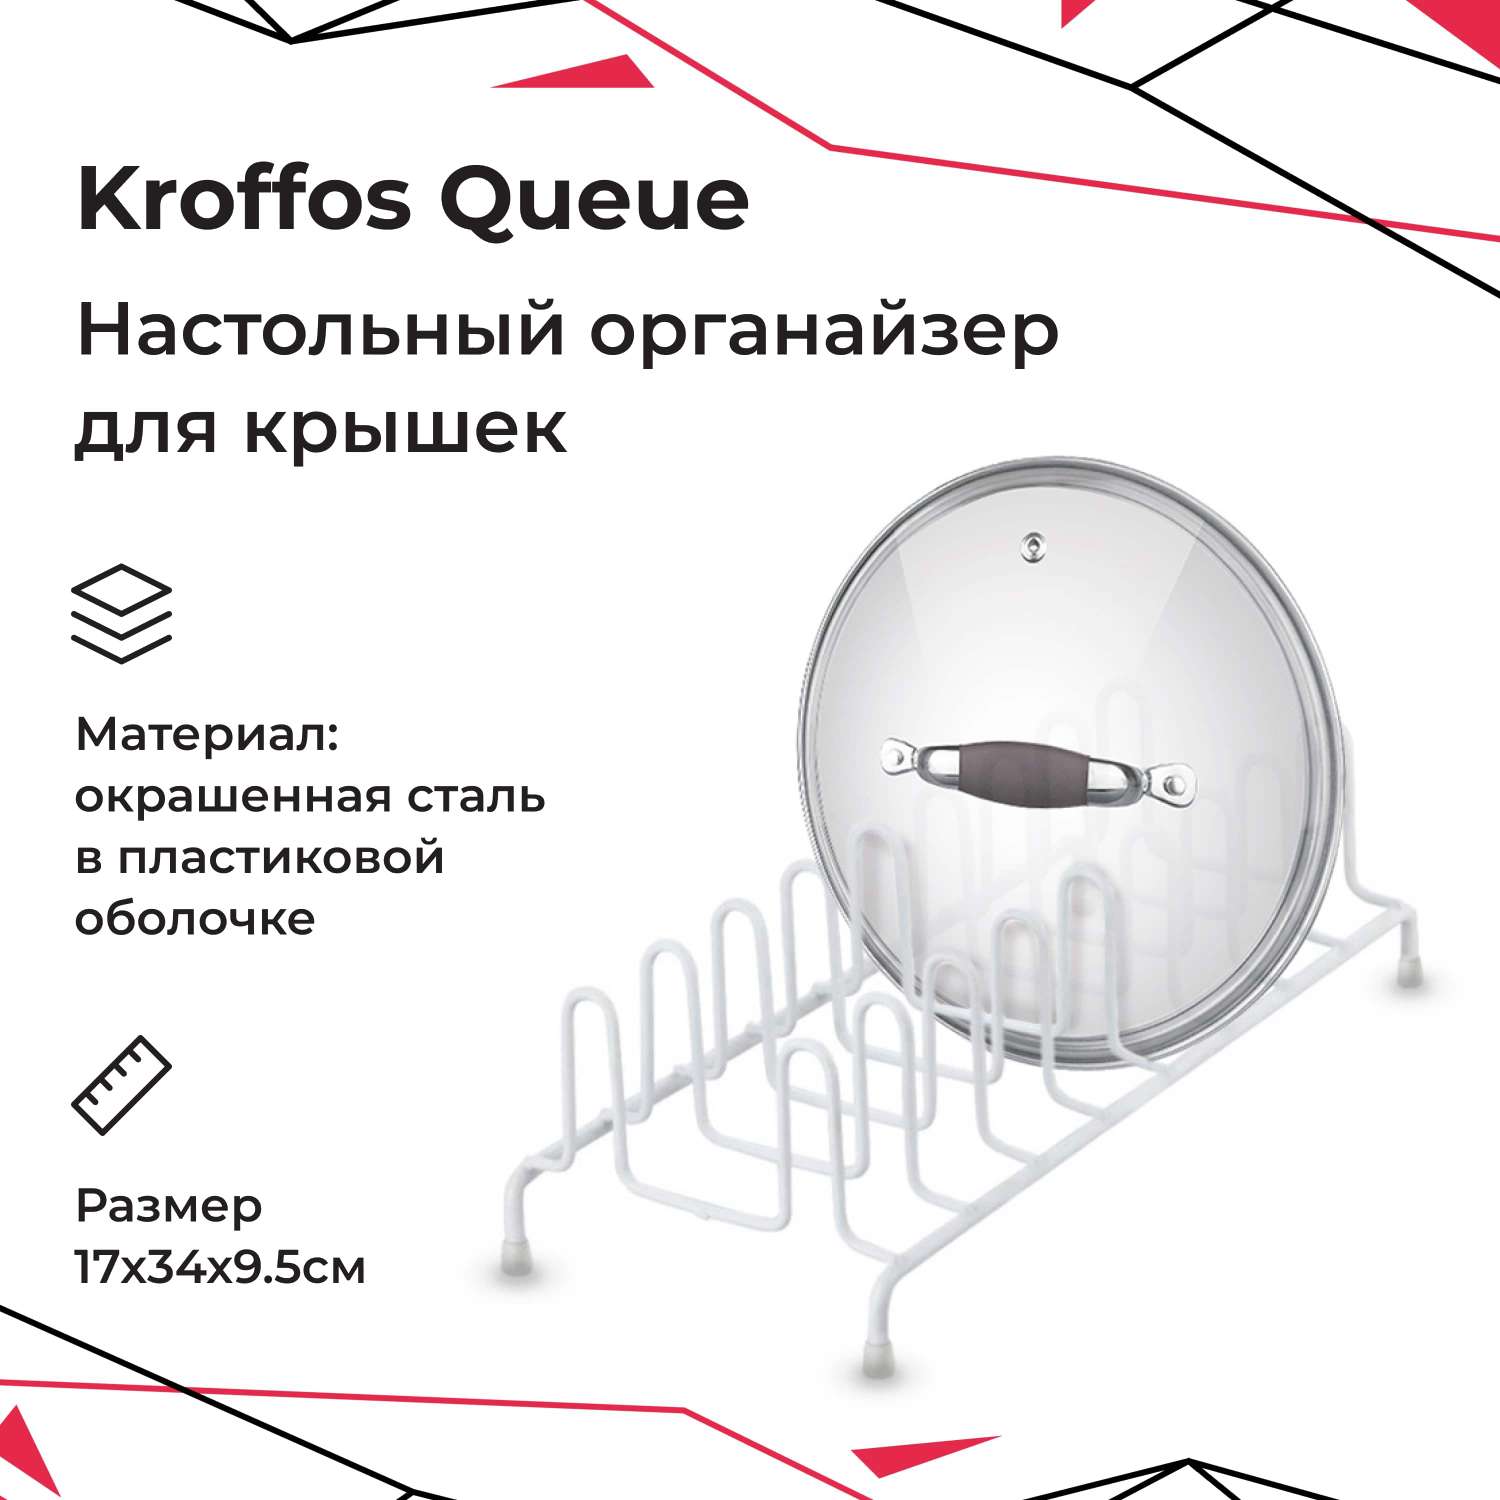 Органайзер для крышек KROFFOS queue настольный - фото 1